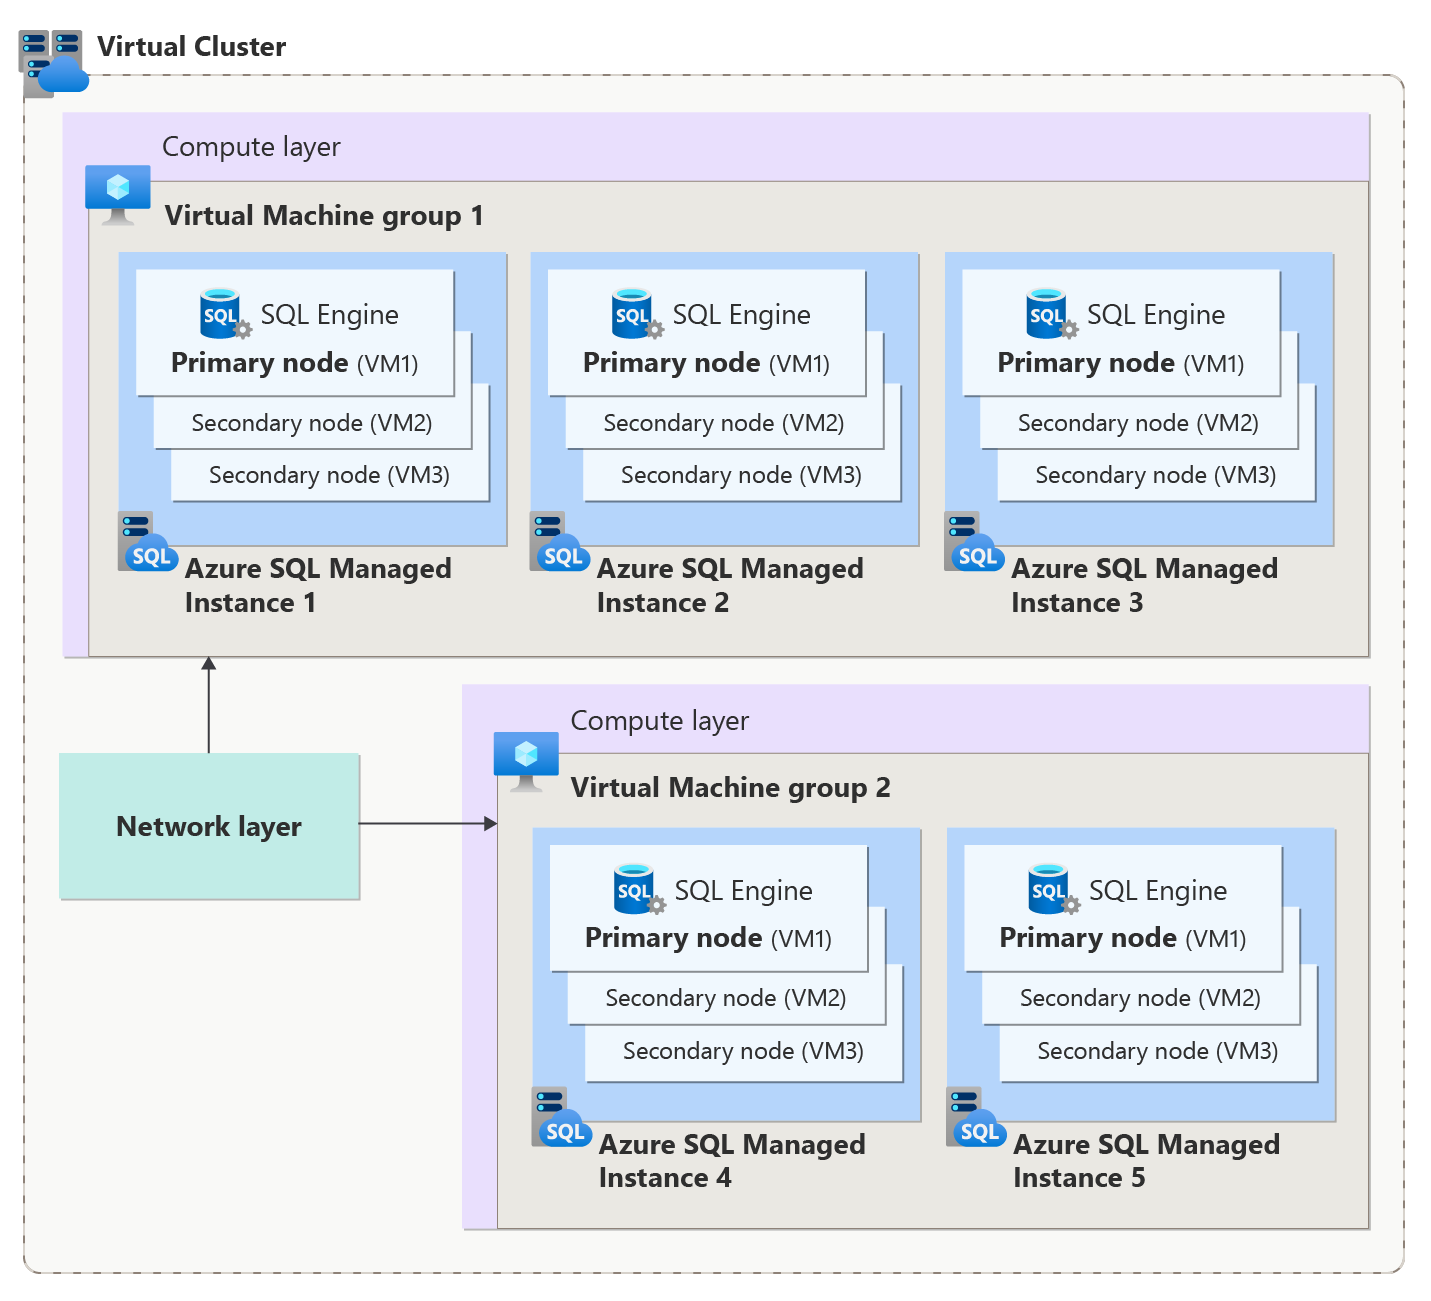 显示 Azure SQL 托管实例的虚拟群集体系结构的关系图。